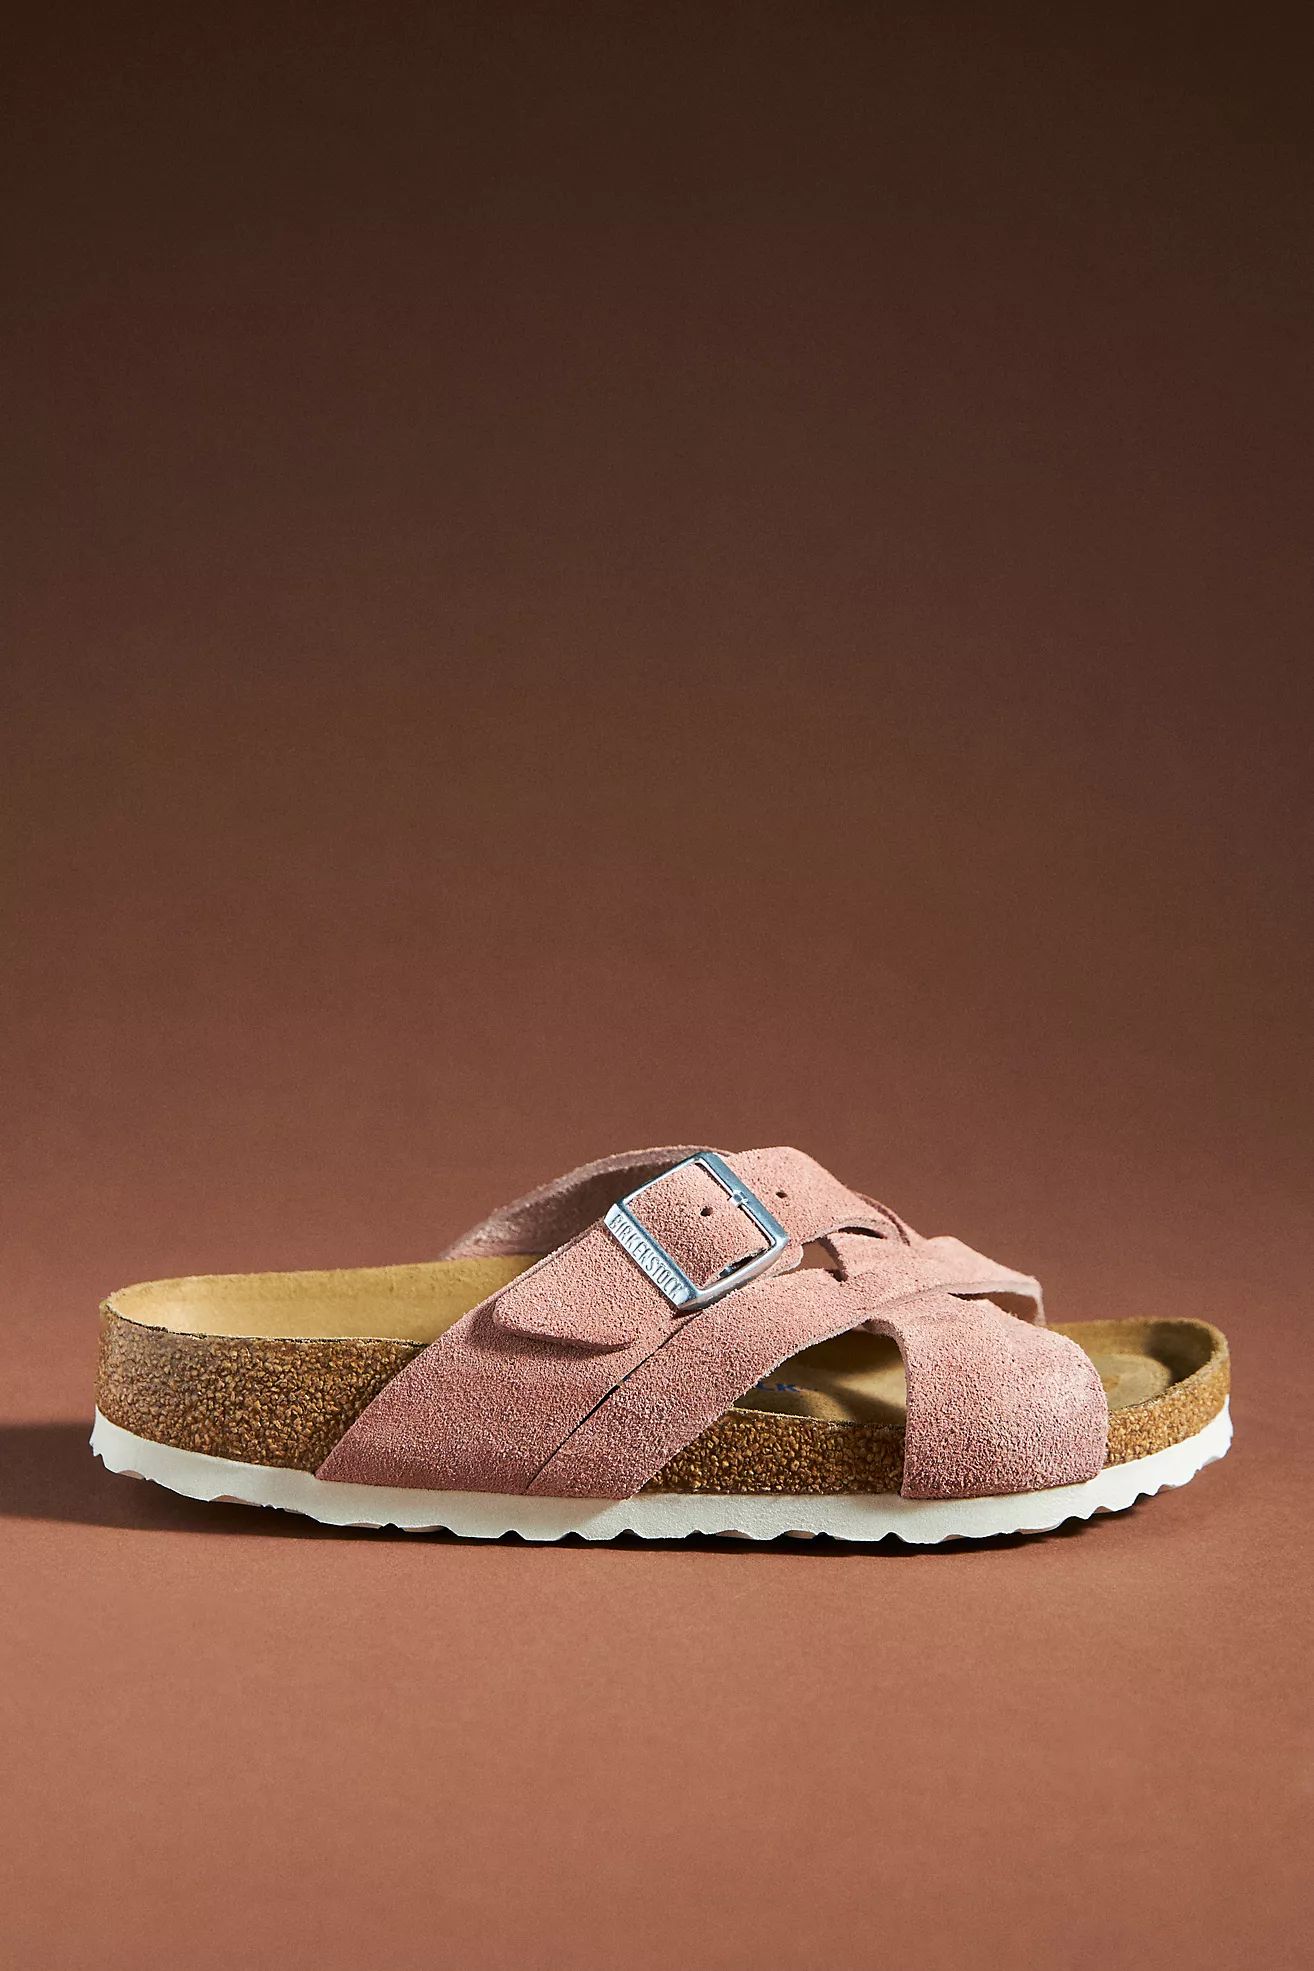 Birkenstock Lugano Soft Footbed Sandals | Anthropologie (US)